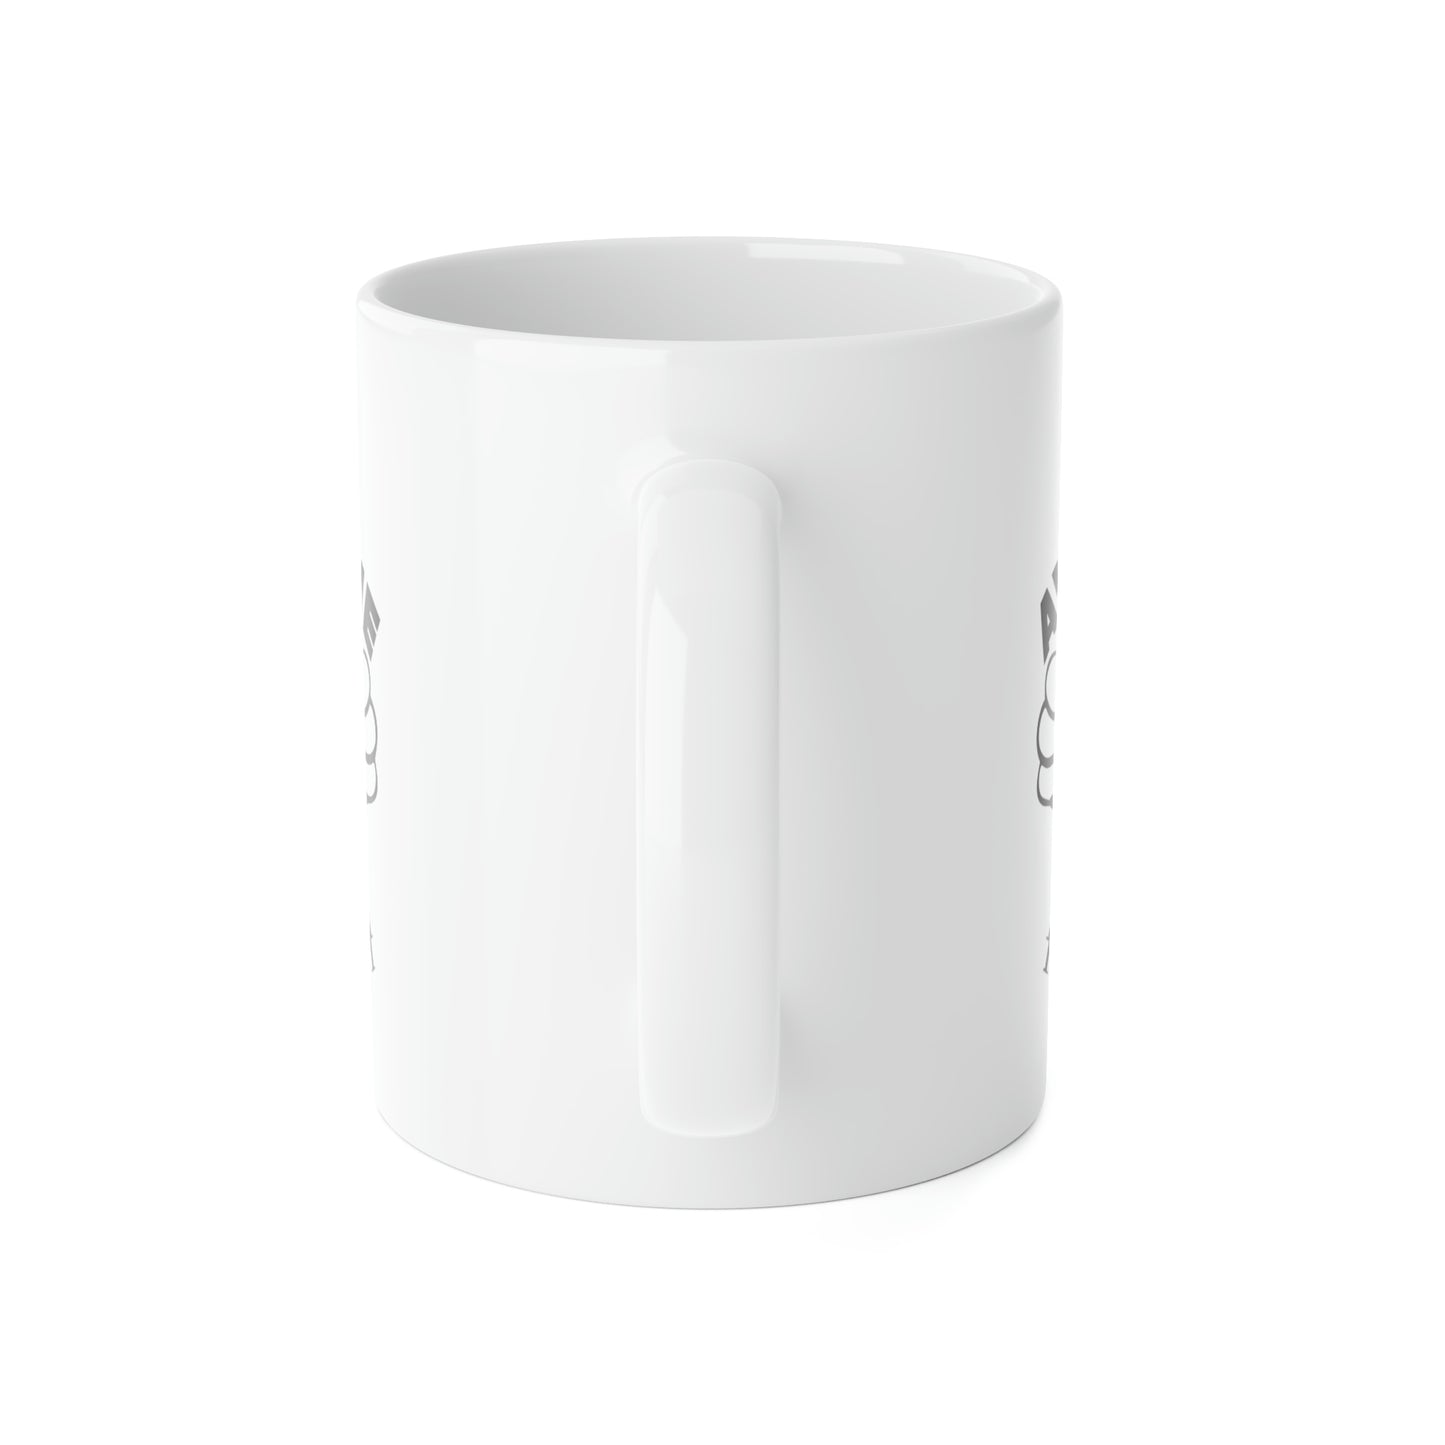 AWESOME NURSE White Ceramic Mug, 11oz